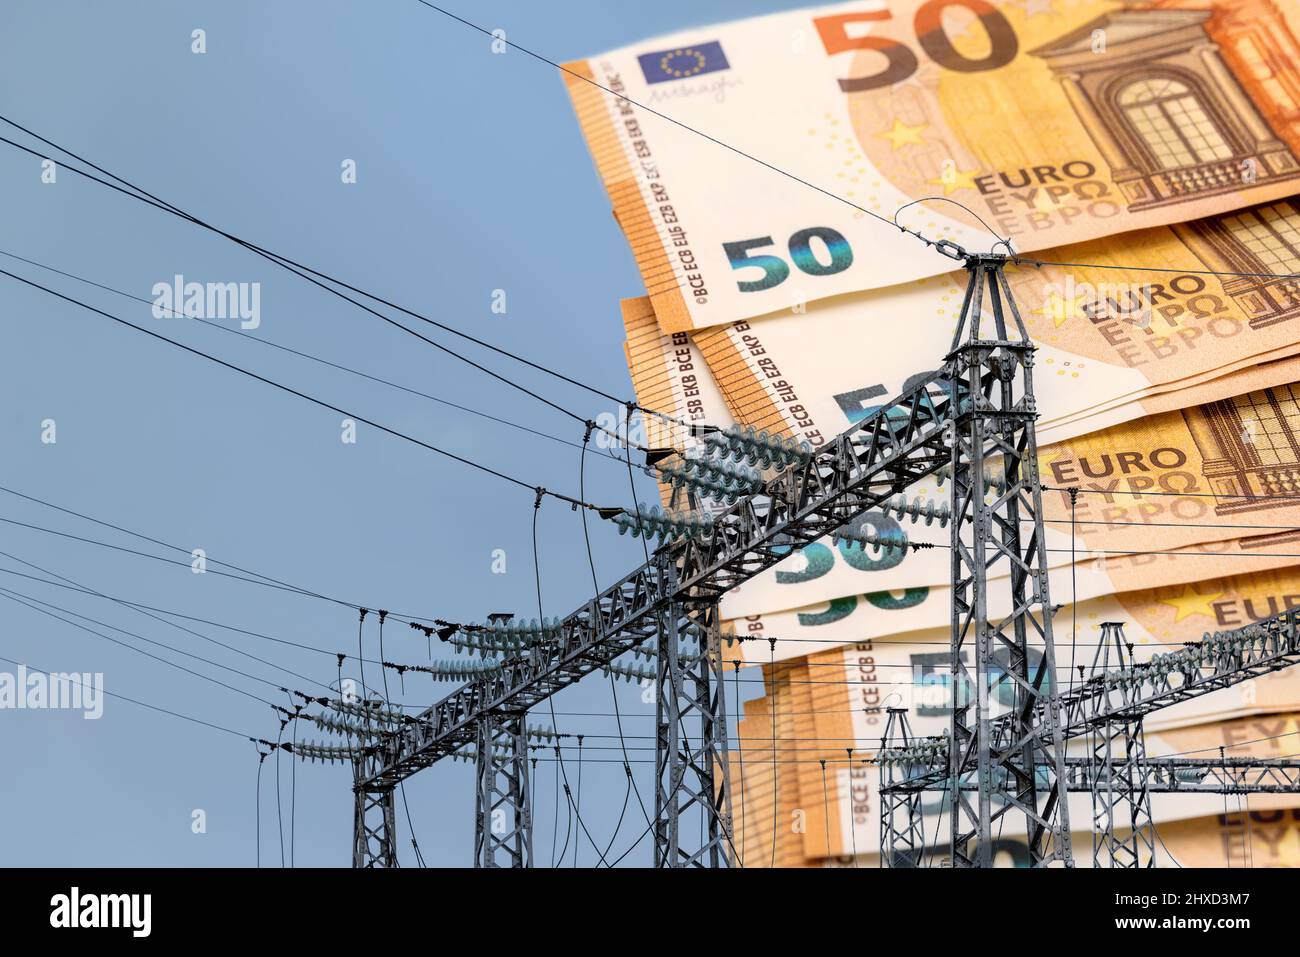 Turm mit Hochspannungs-Elektrokabeln mit Euro-Banknoten im Hintergrund, teures Preiskrisenenergiekonzept Stockfoto